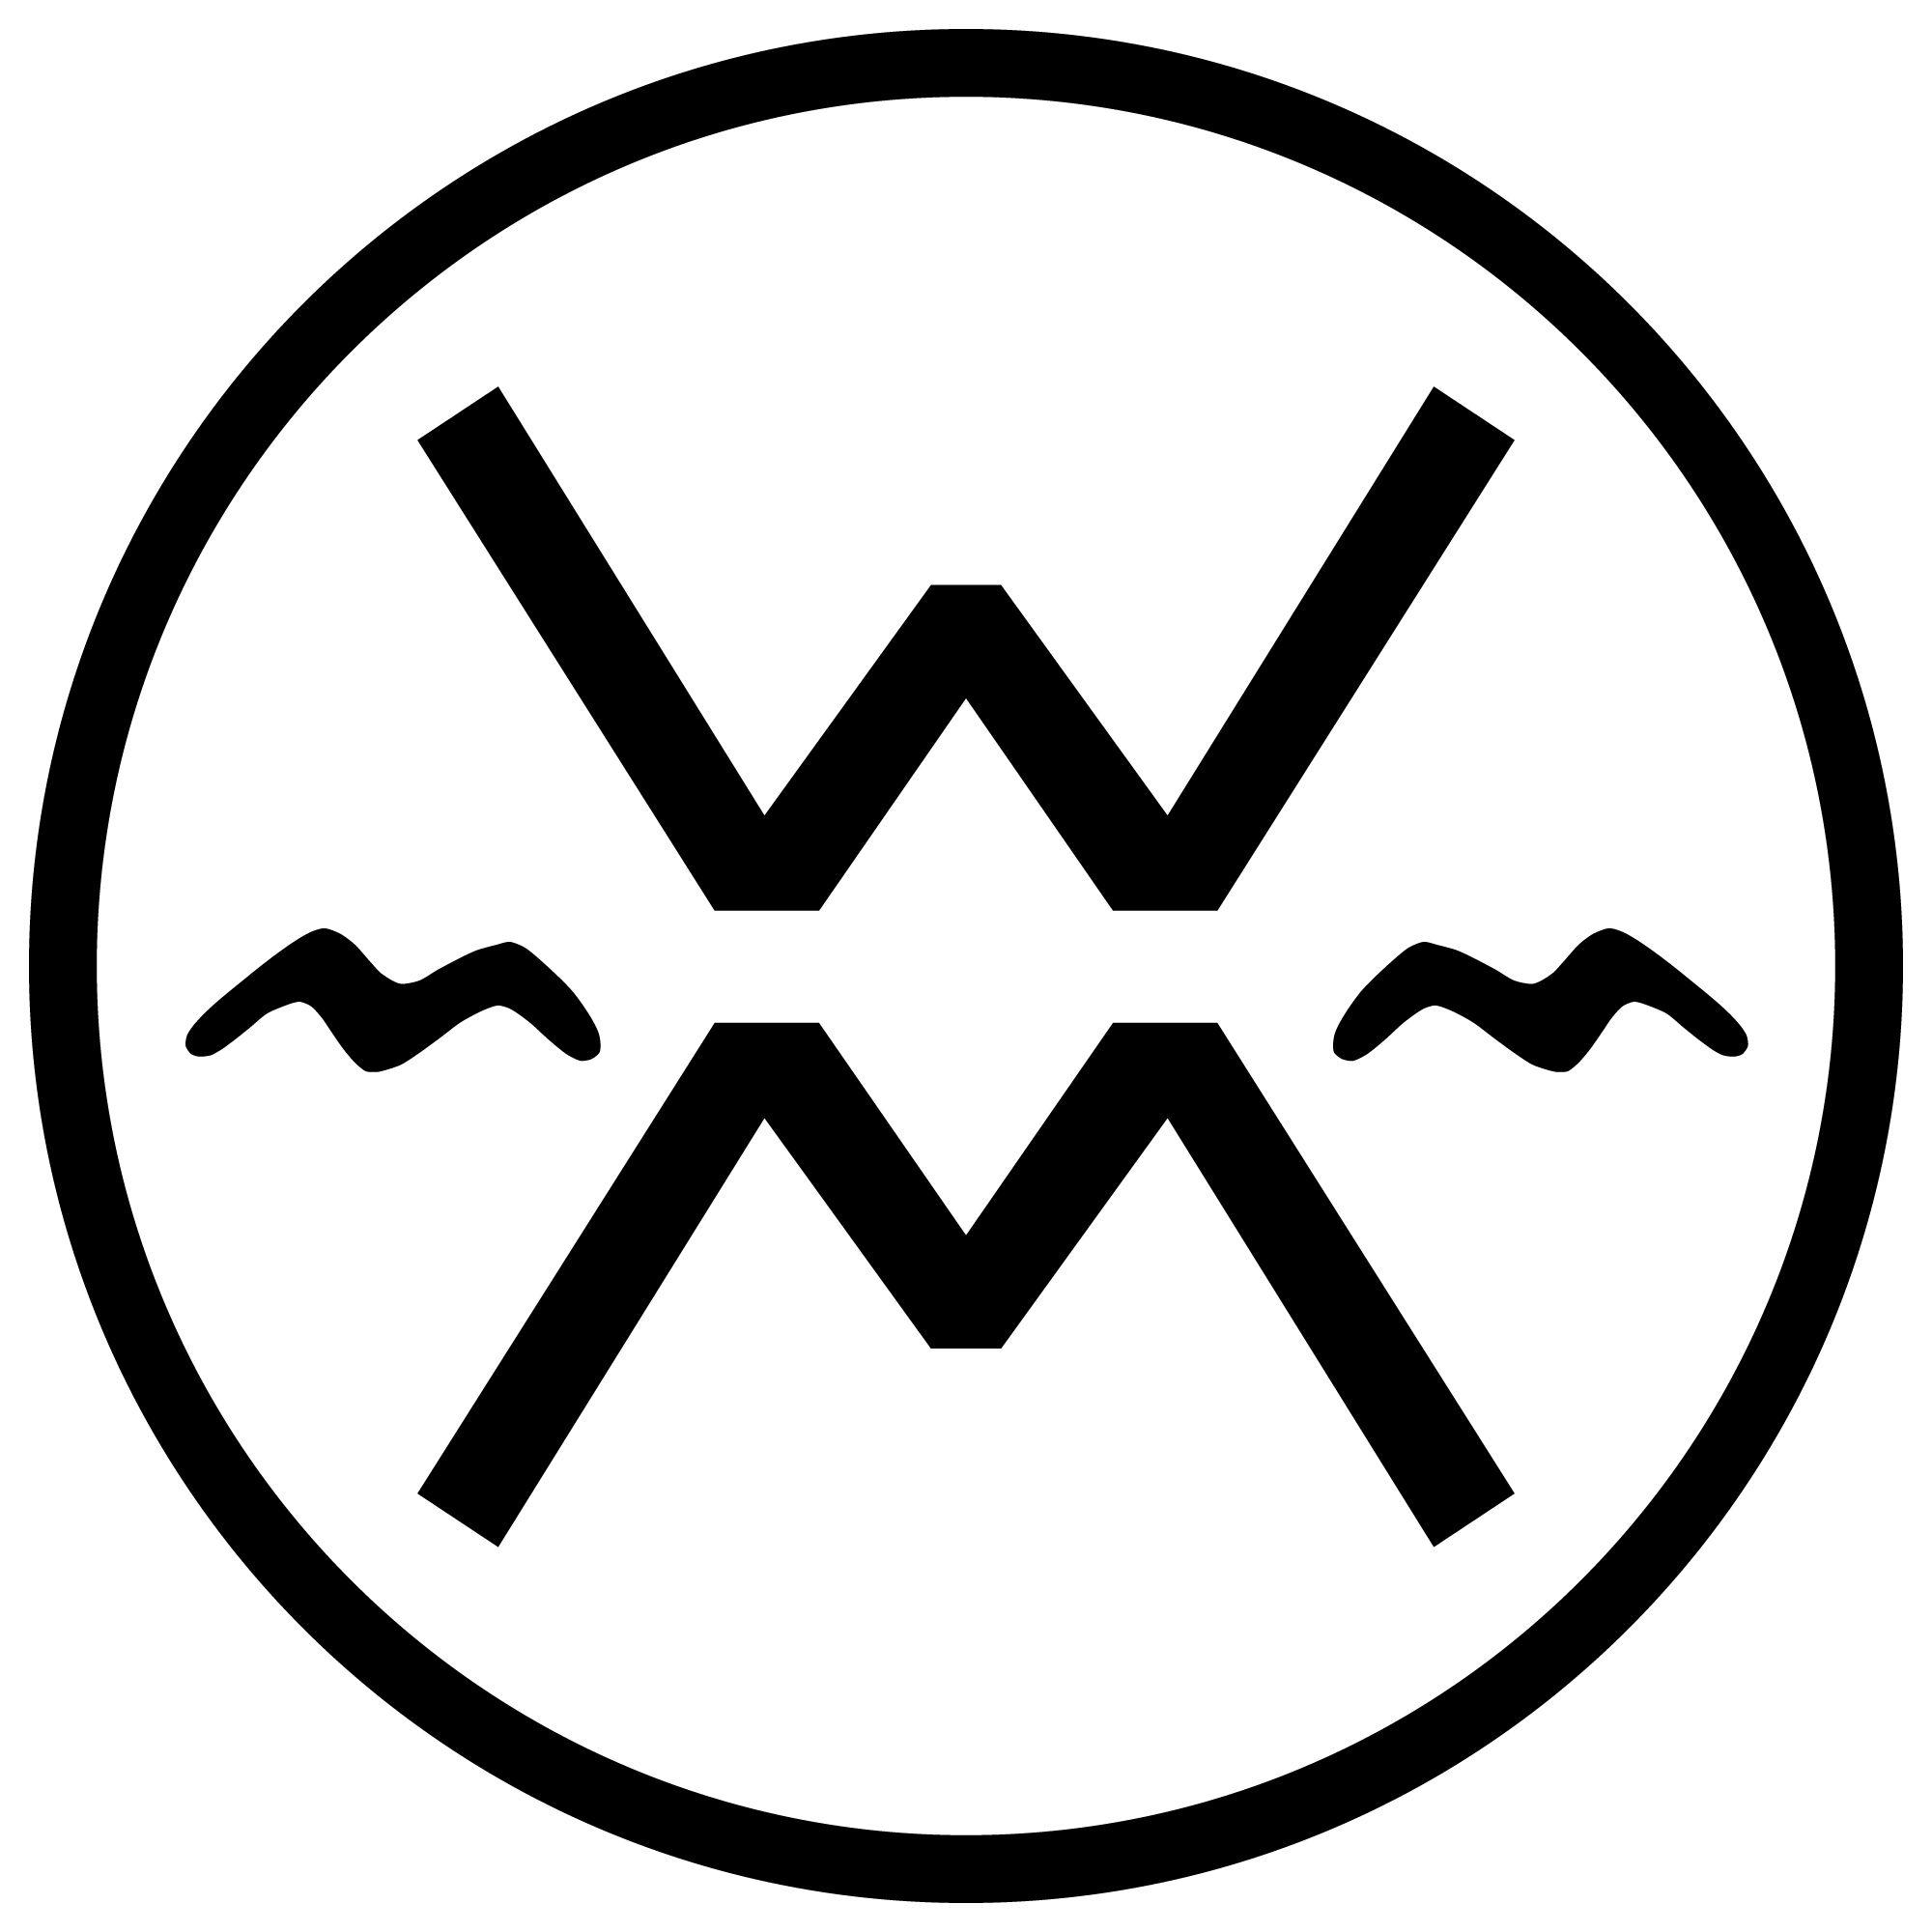 Werner Logo - Werner Blog. Werner Paddles Our “family Logo” Back To Its Original